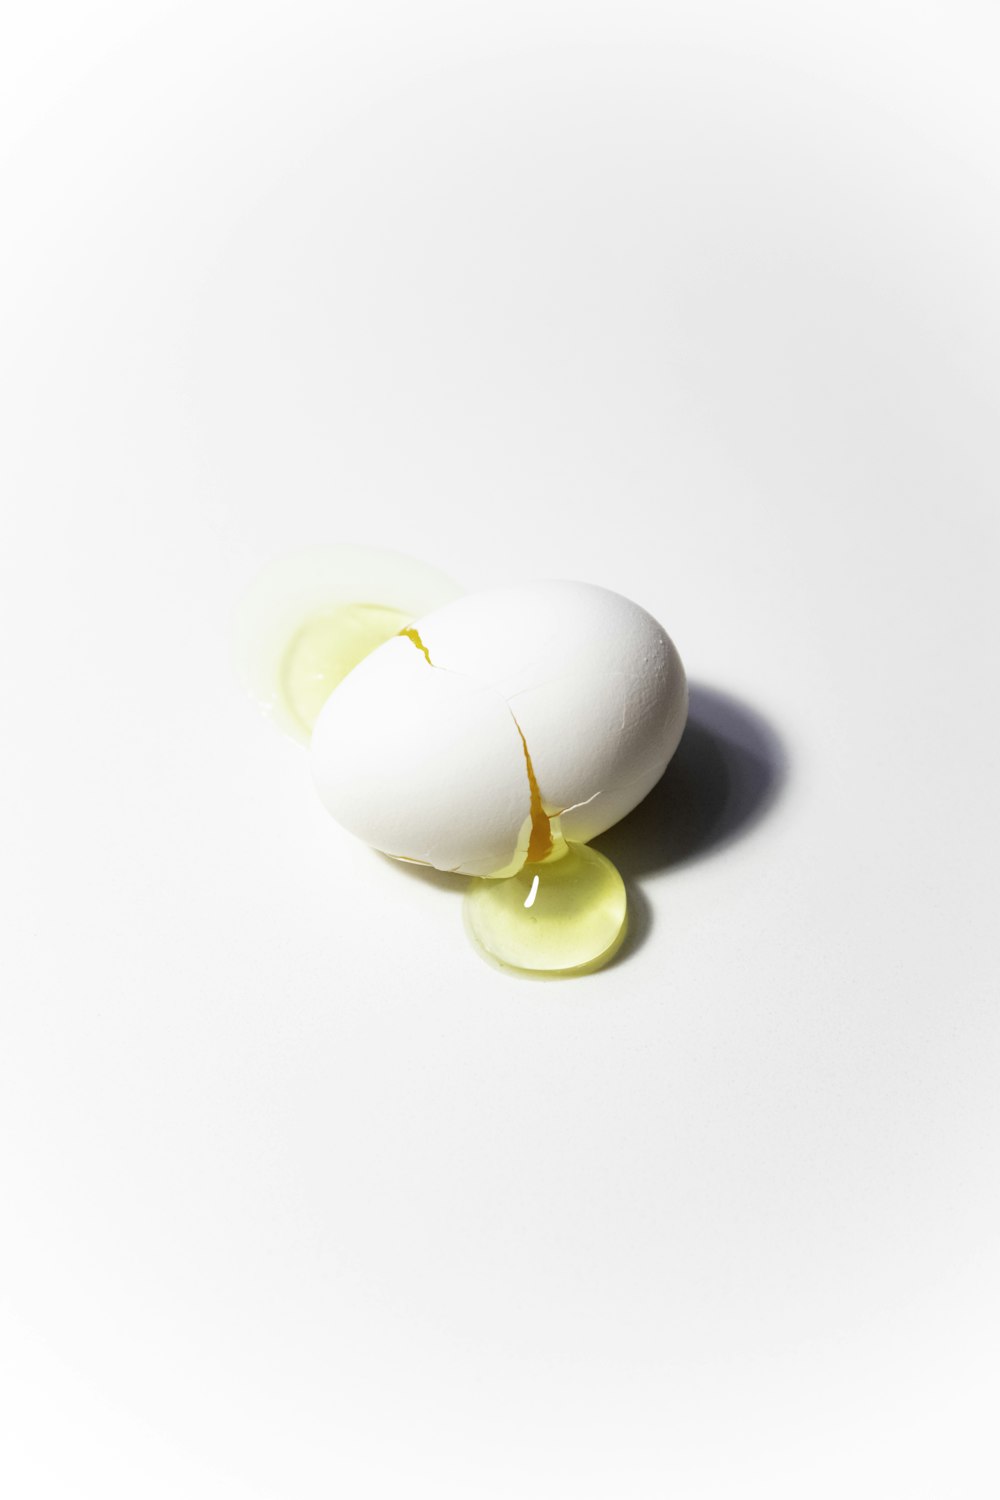 白い表面に白い卵